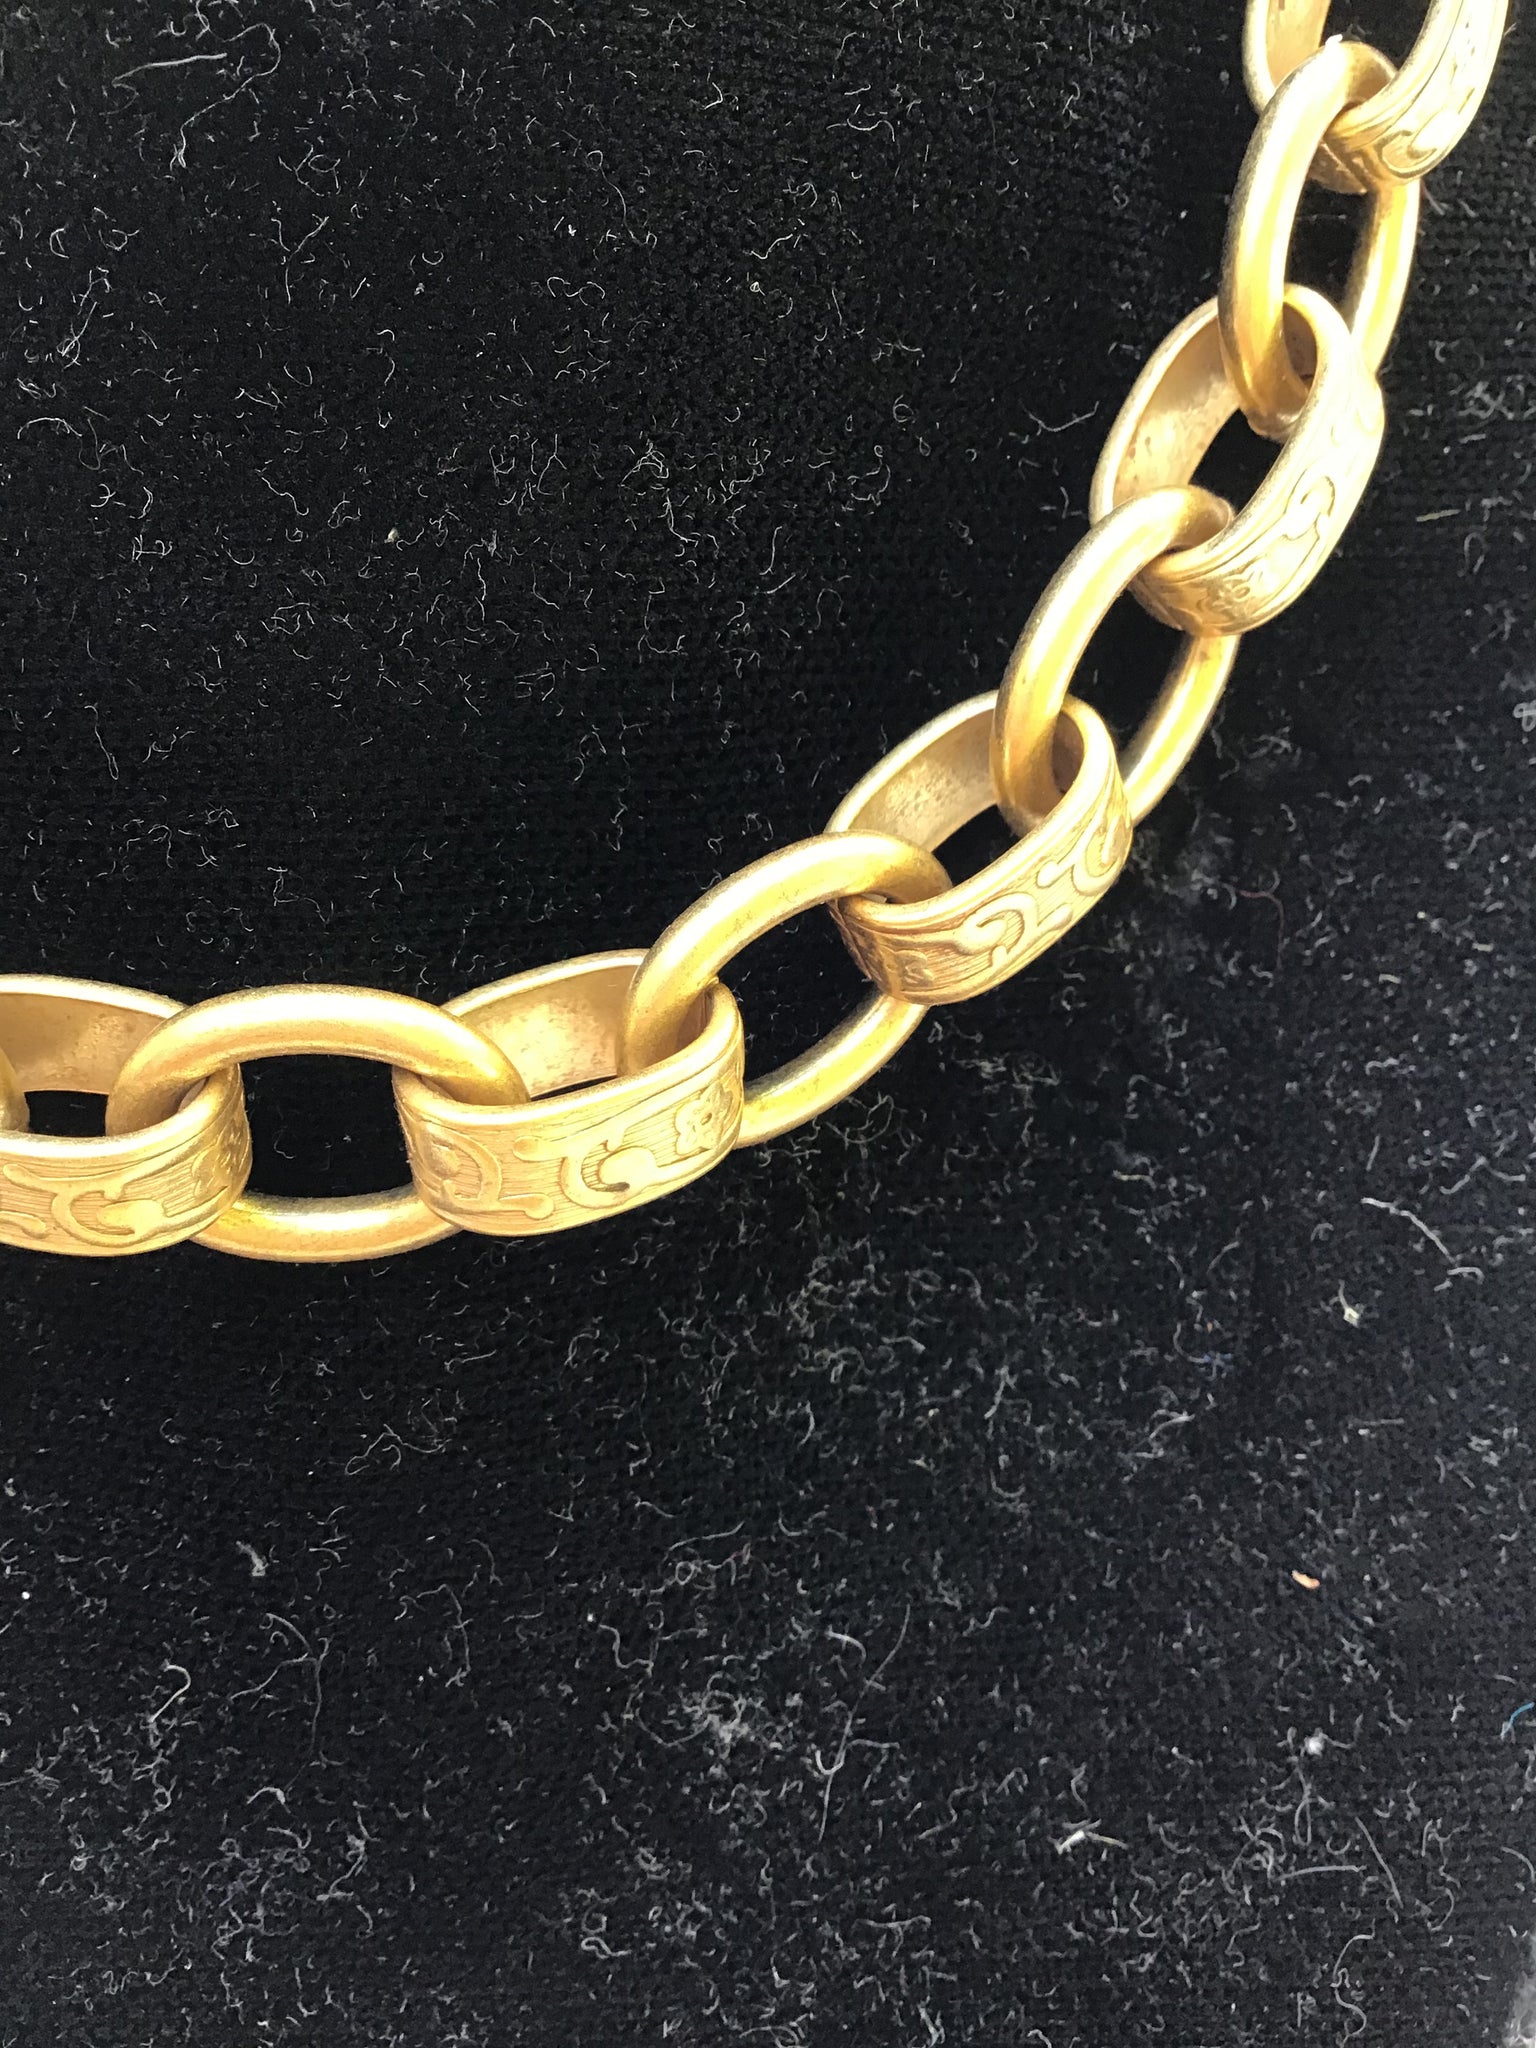 Filigree Link Necklace 24-karat Gold Plate